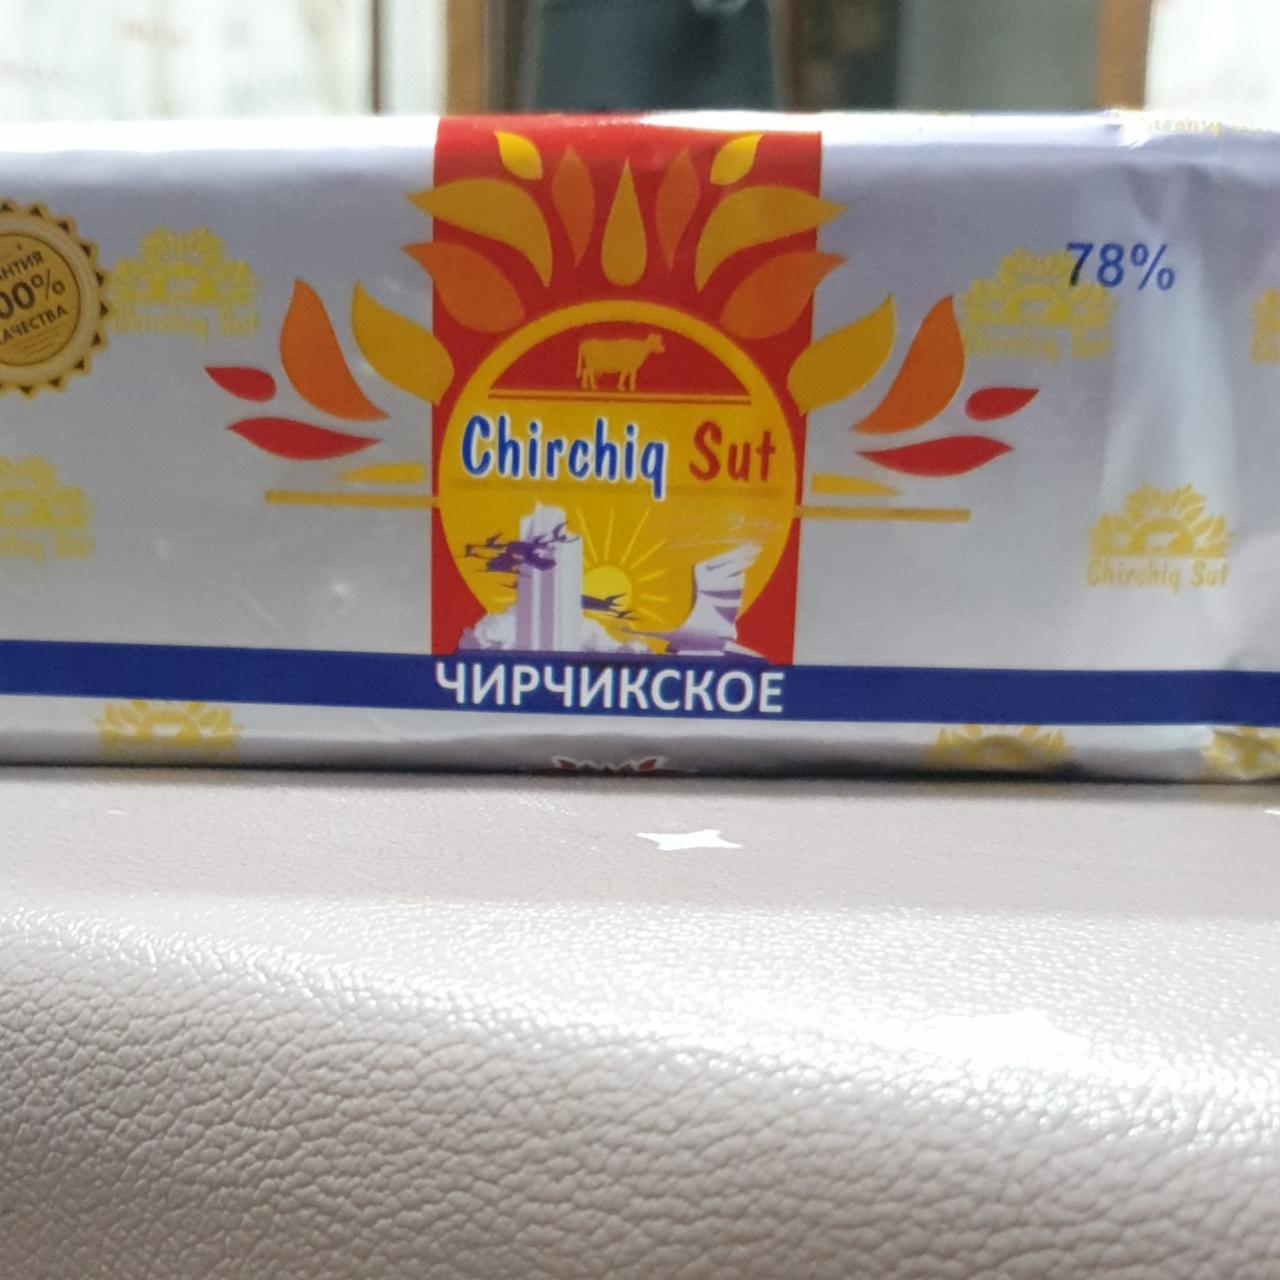 Фото - масло сливочное ЧИРЧИКСКОЕ 78% ChirchiqSut